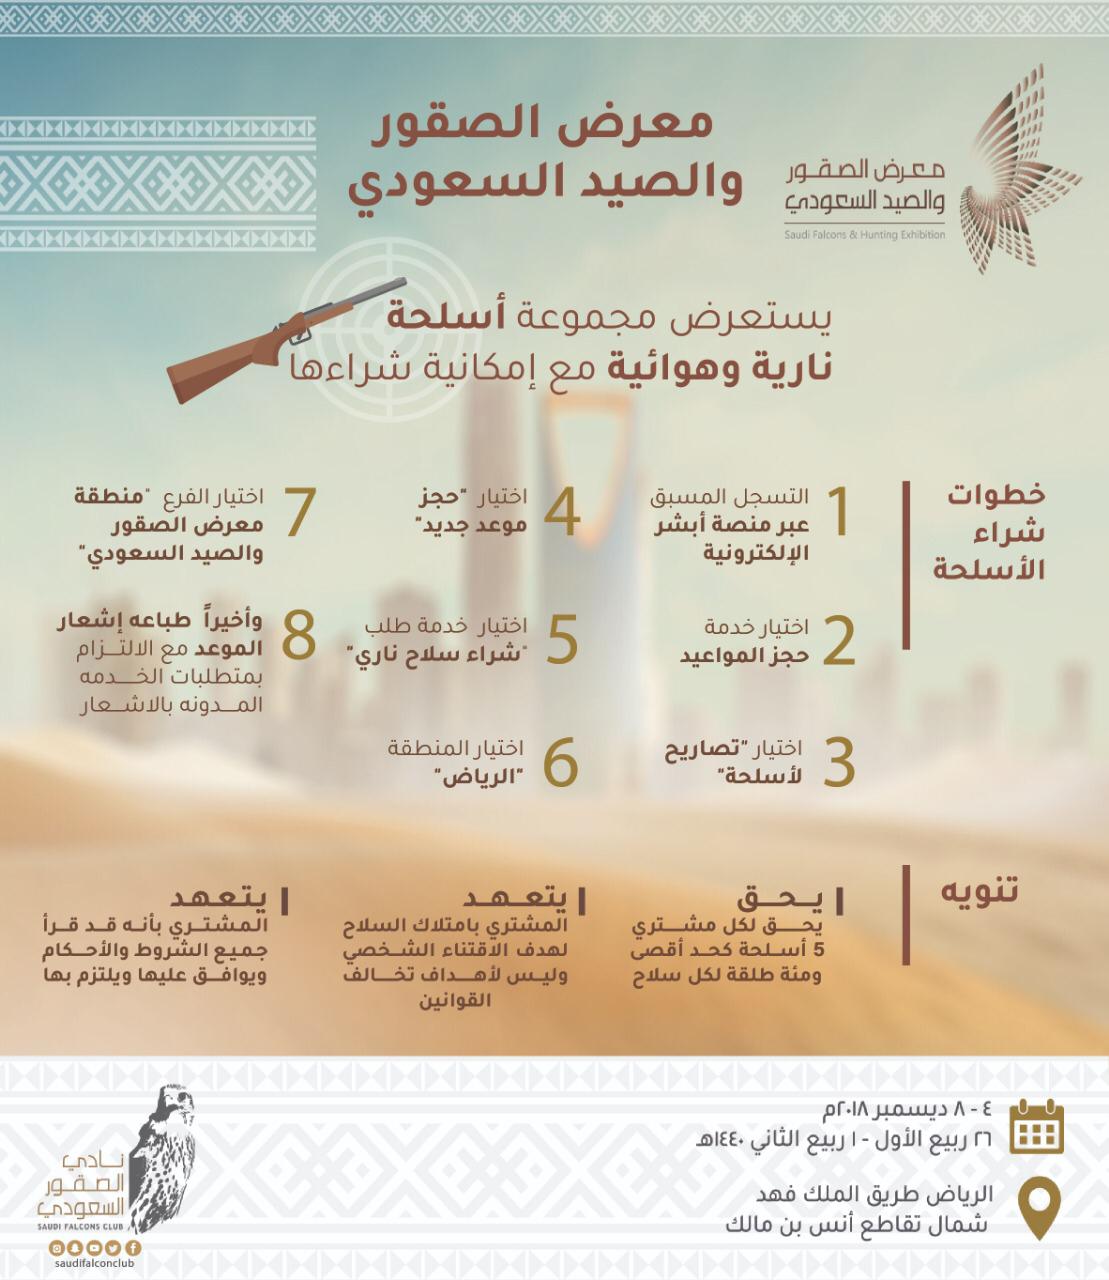 السعودي التسجيل والصيد معرض في الصقور شراء سلاح